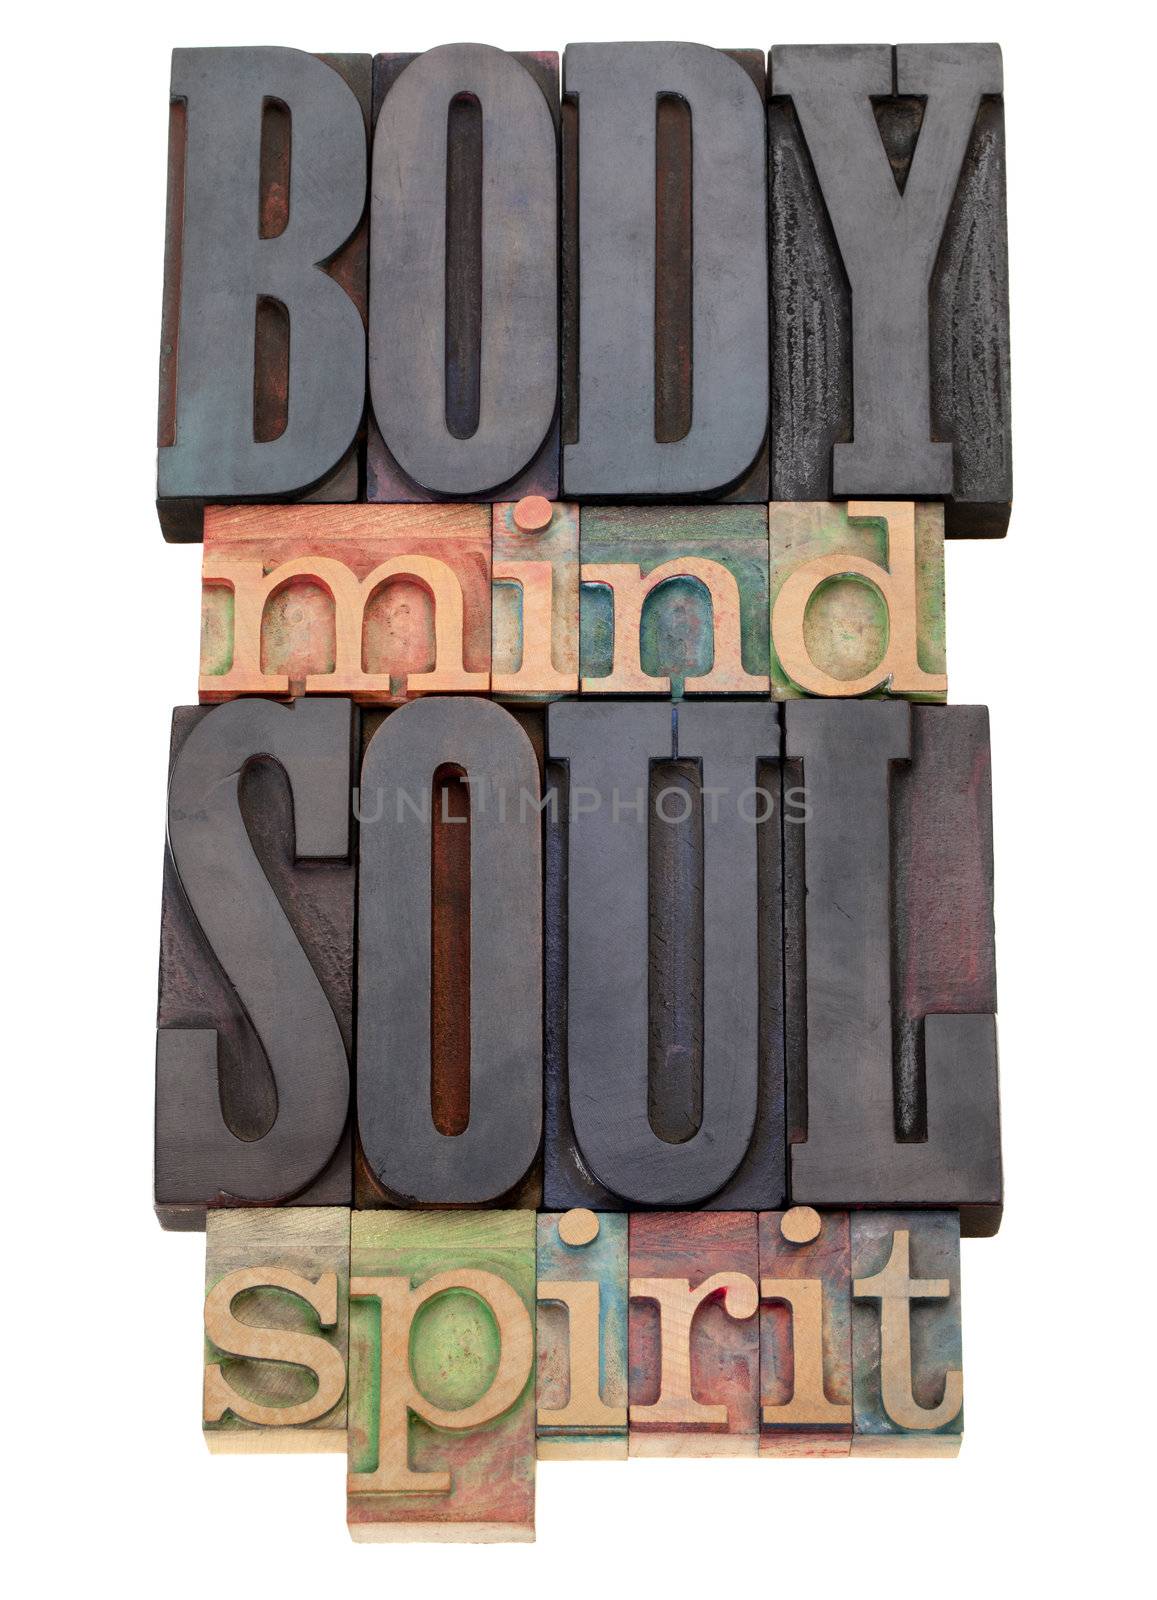 body, mind, soul, spirit  in letterpress type by PixelsAway